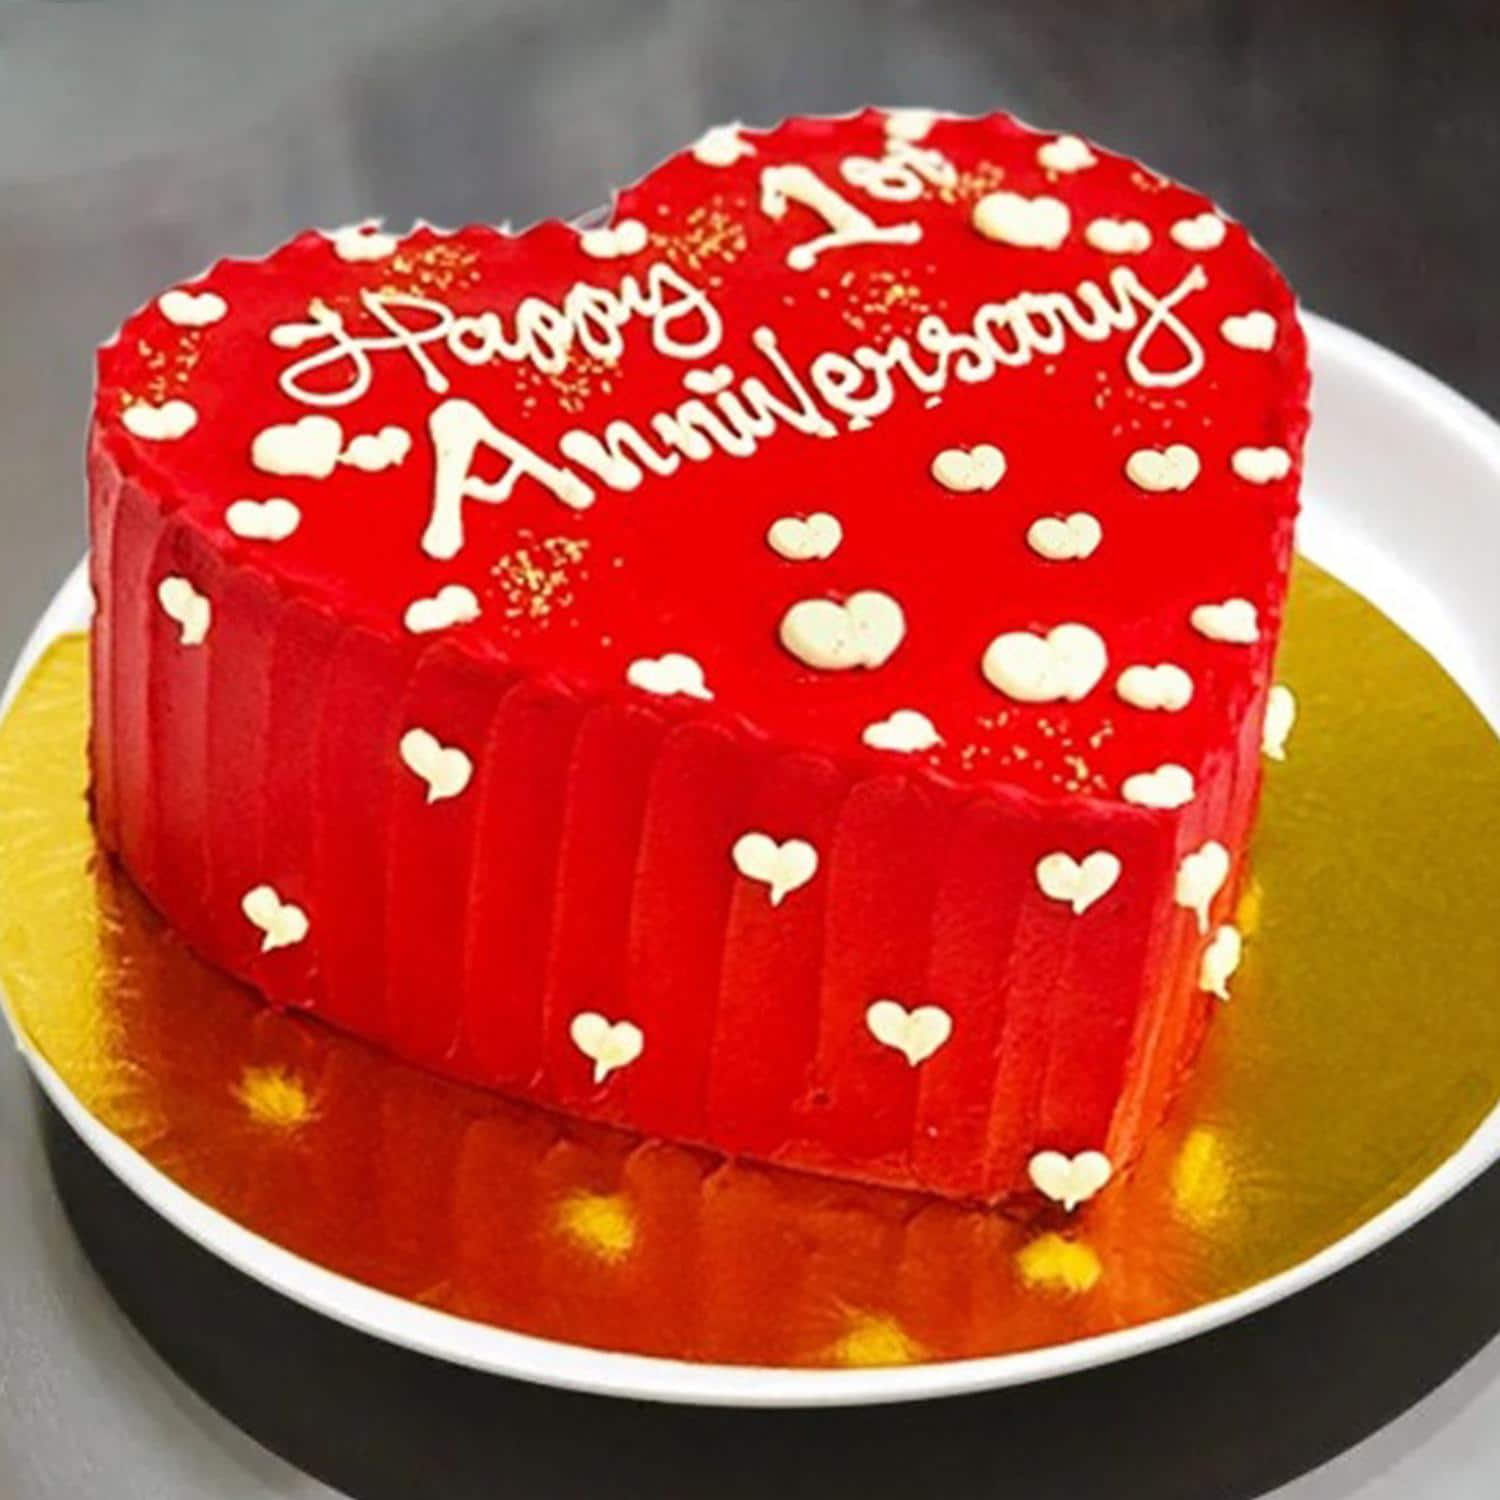 Buy Anniversary Cake | Romantic Anniversary Cake | 6 Month Anniversary Cake  - The Baker's Table